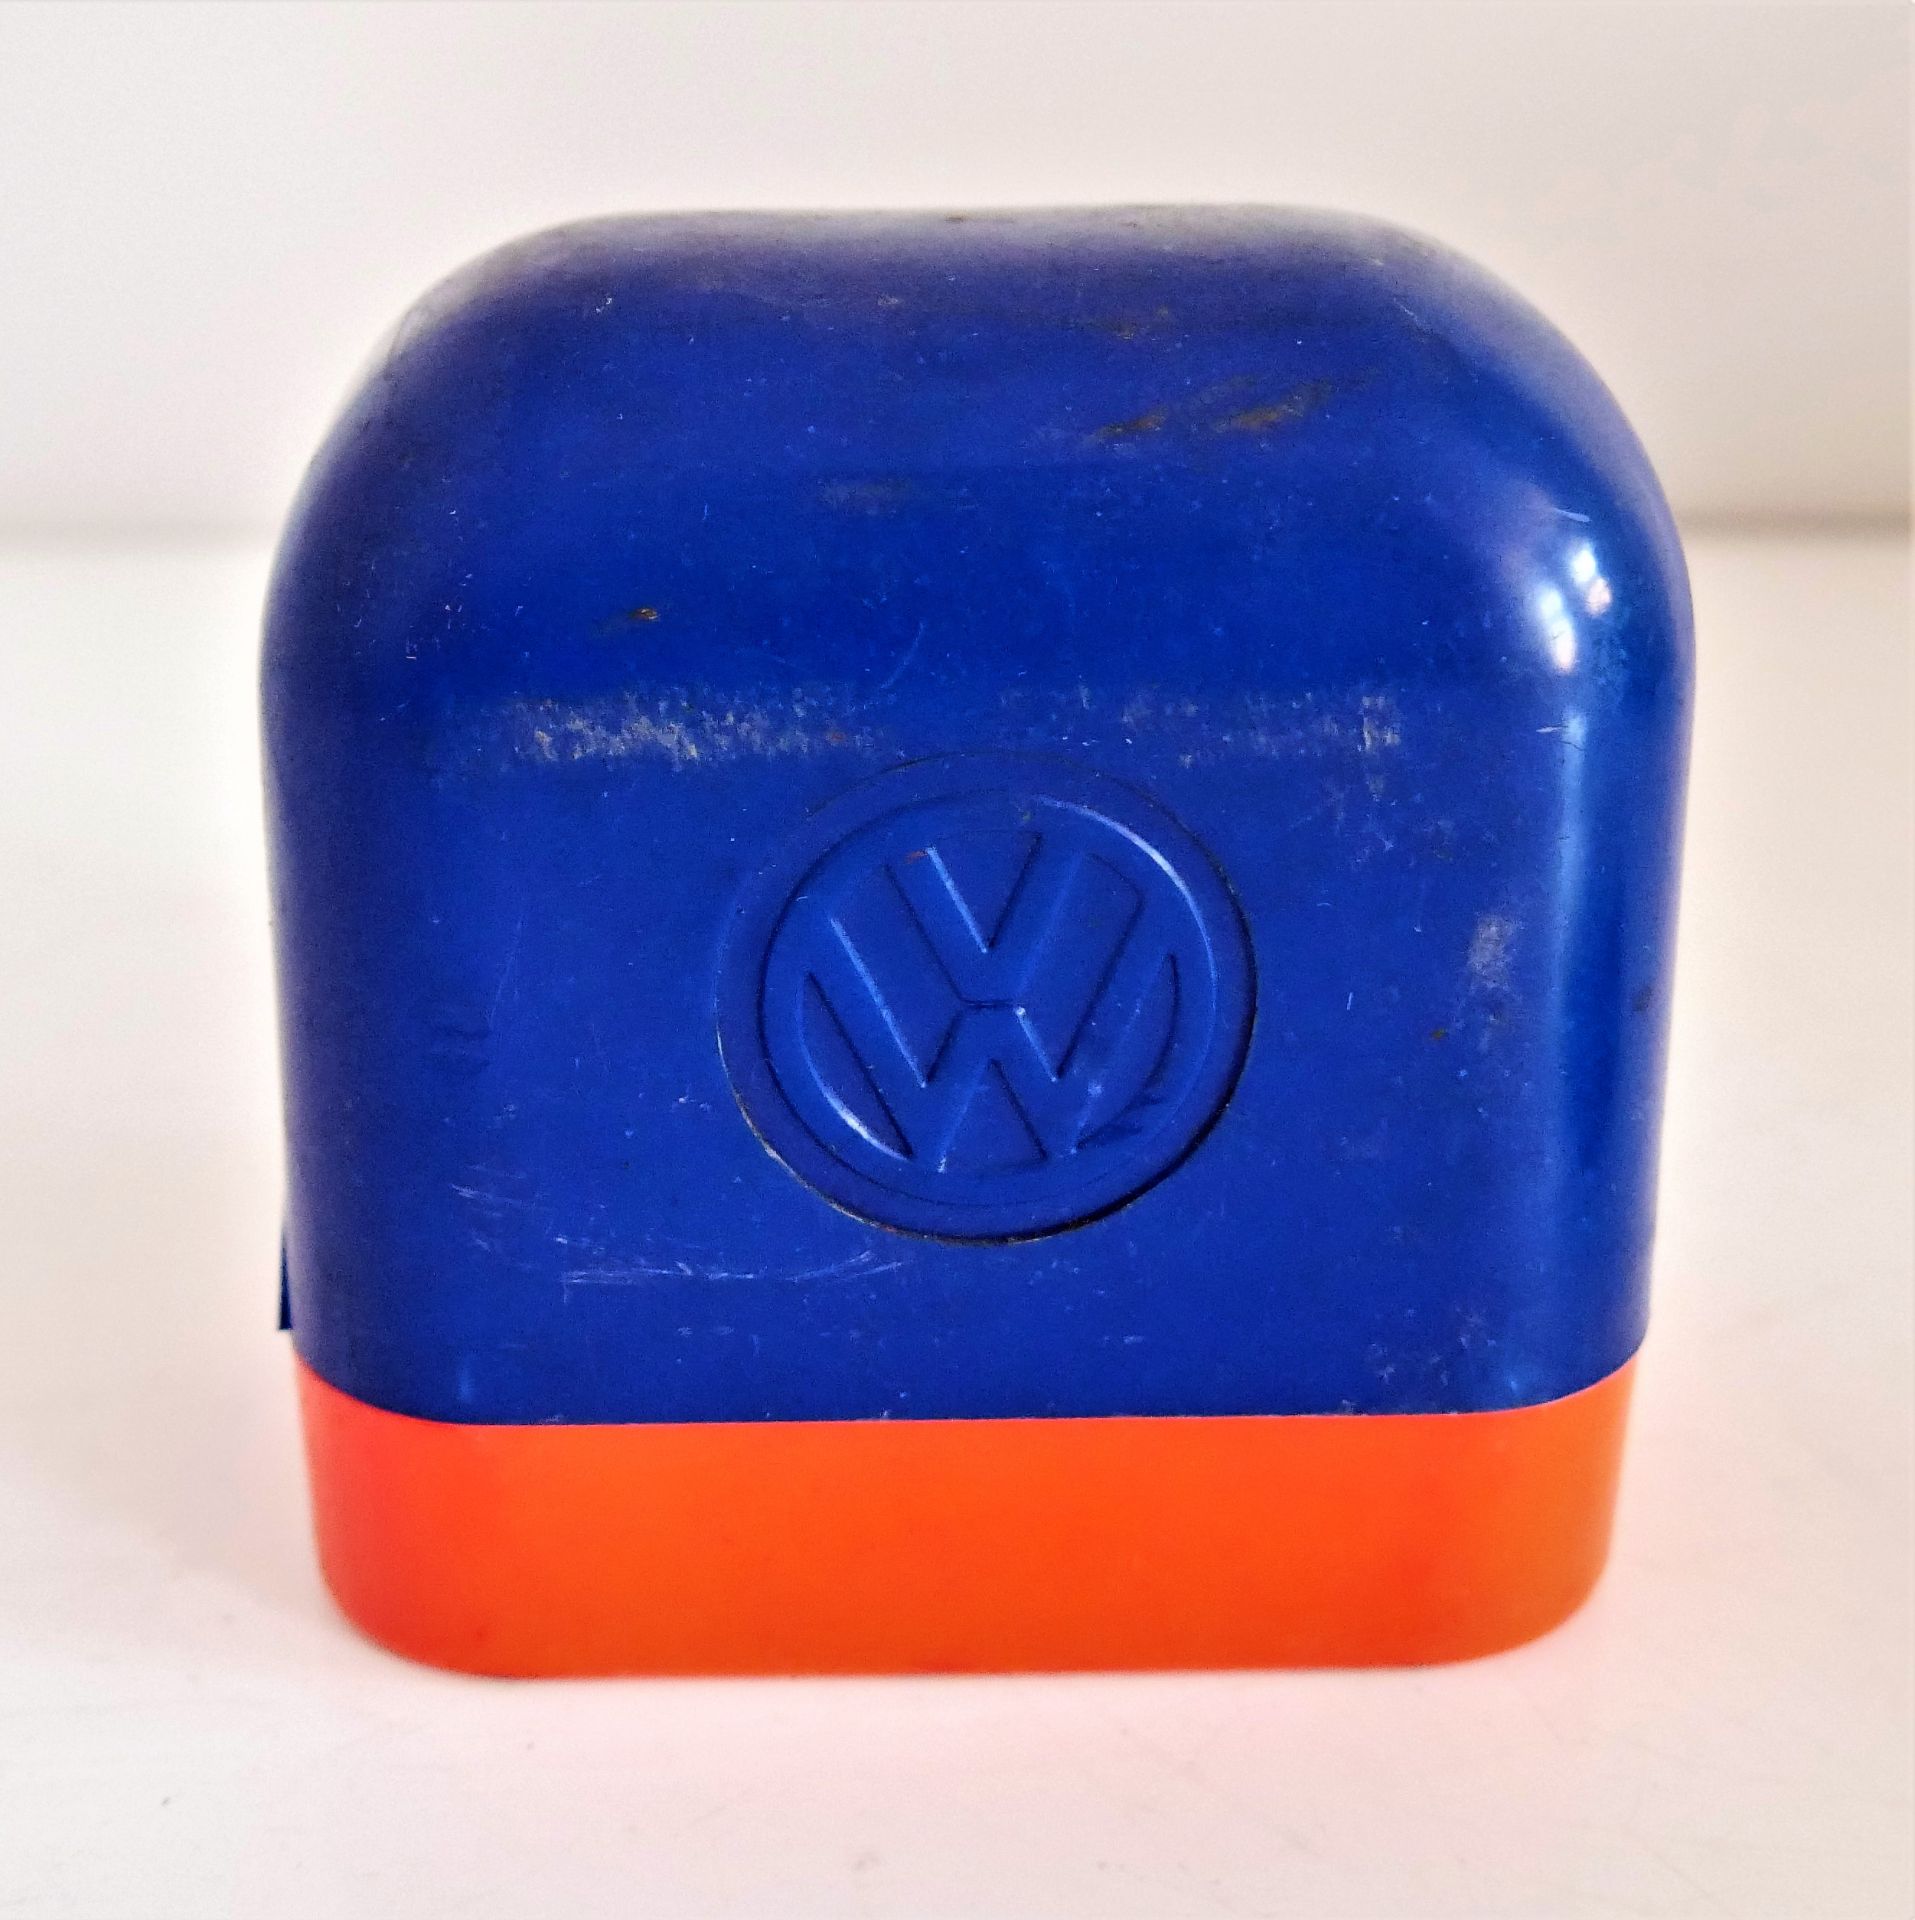 VW Zubehör aus den 60/70er Jahren, dabei eine VW Plastikbox, wohl für Glühlampen sowie 1 Original VW - Image 2 of 2